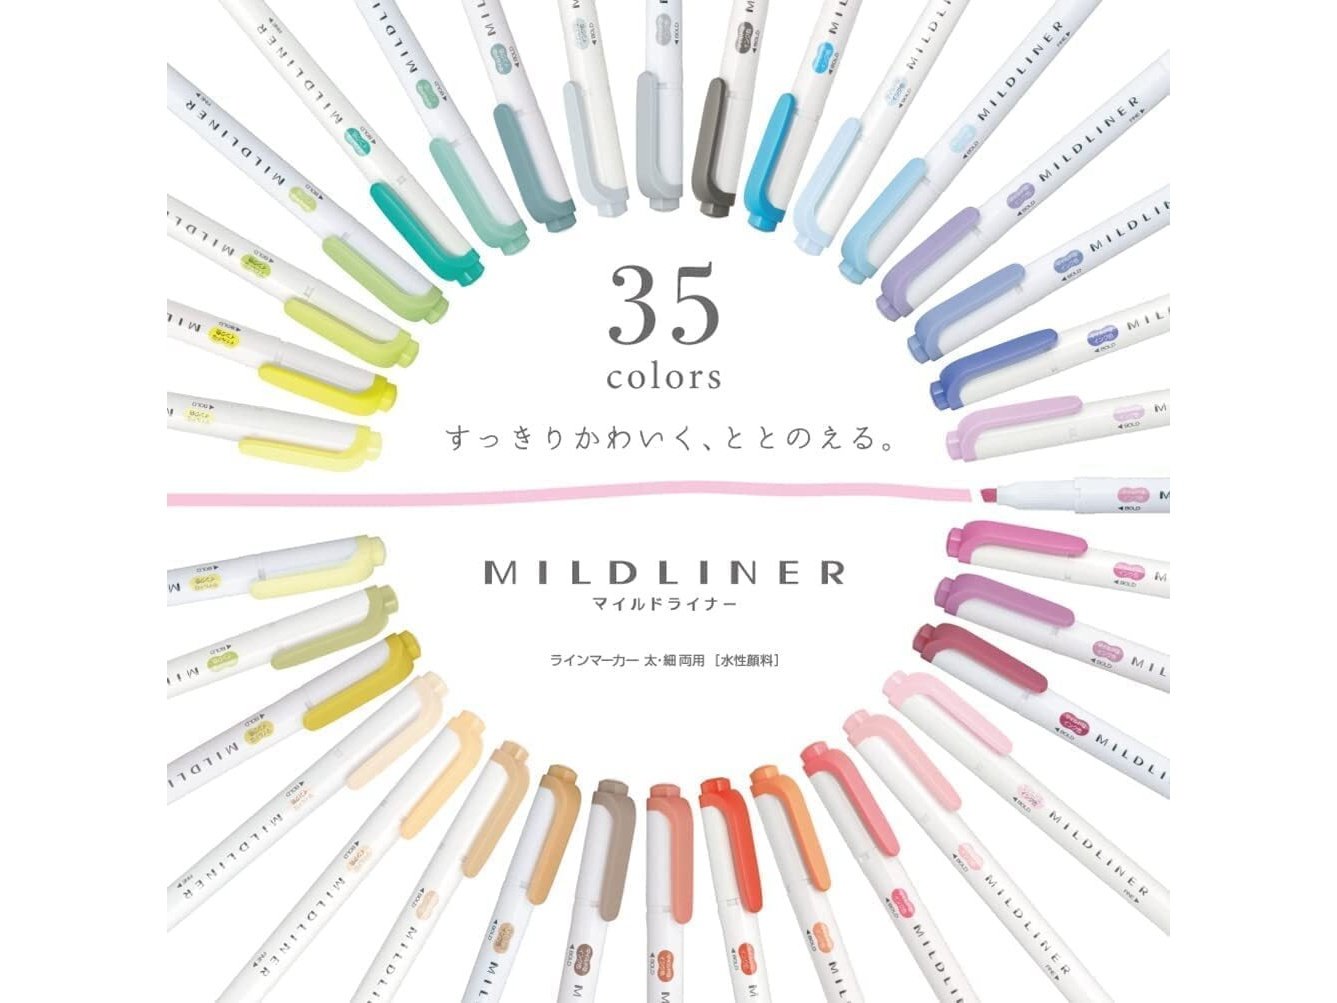 Zebra Mildliner Highlighter Set of 35 Limited Edition